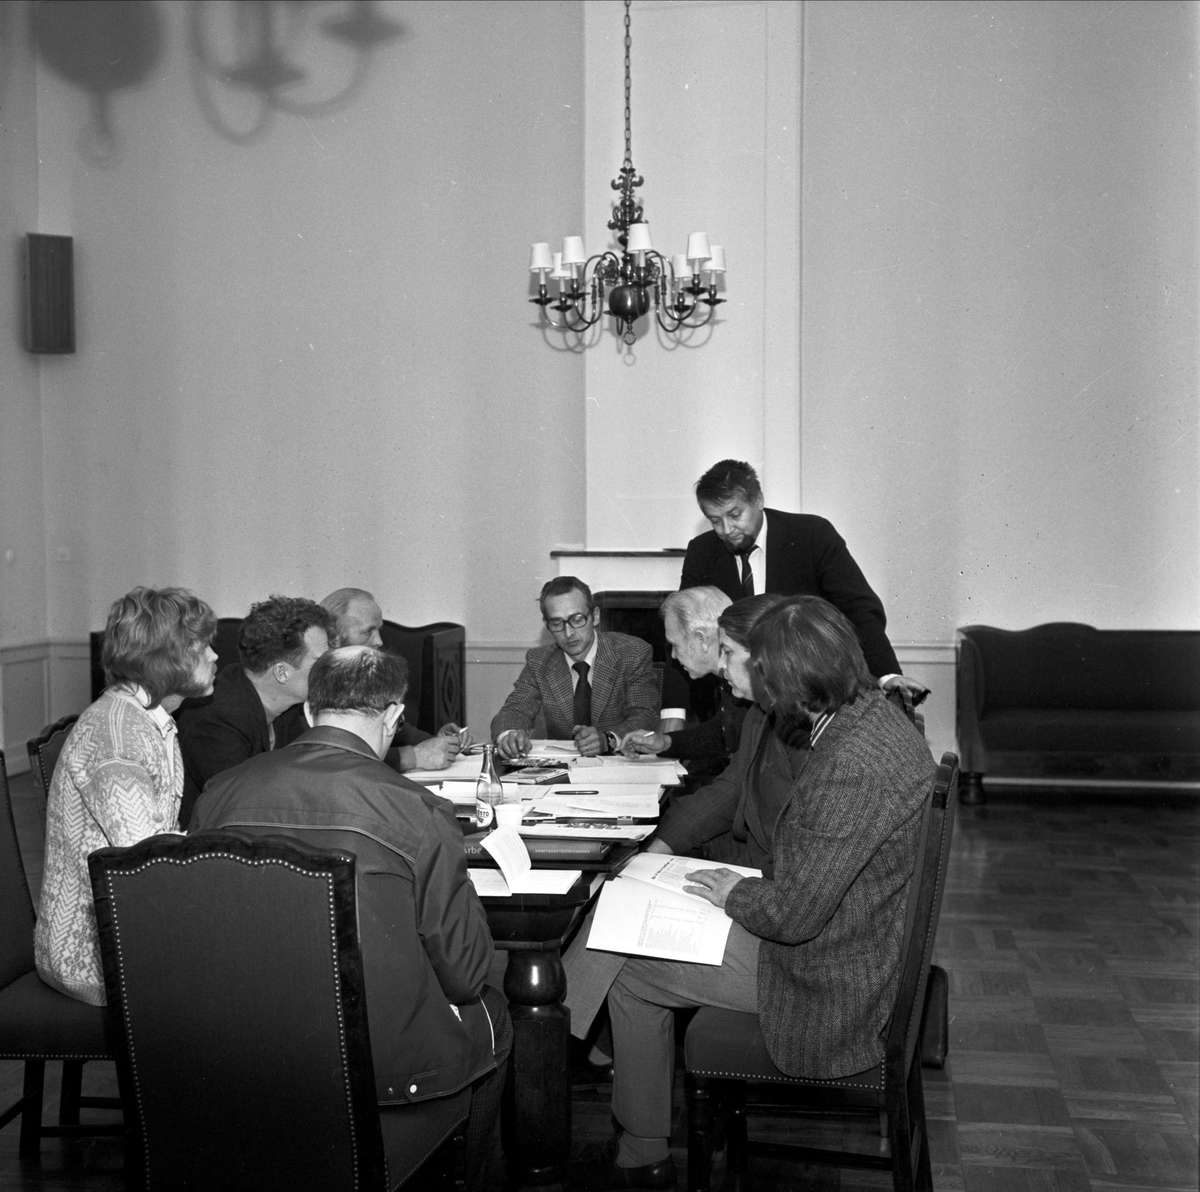 Kurs om företagshälsovård i Söderfors, Söderfors socken, Uppland oktober 1973